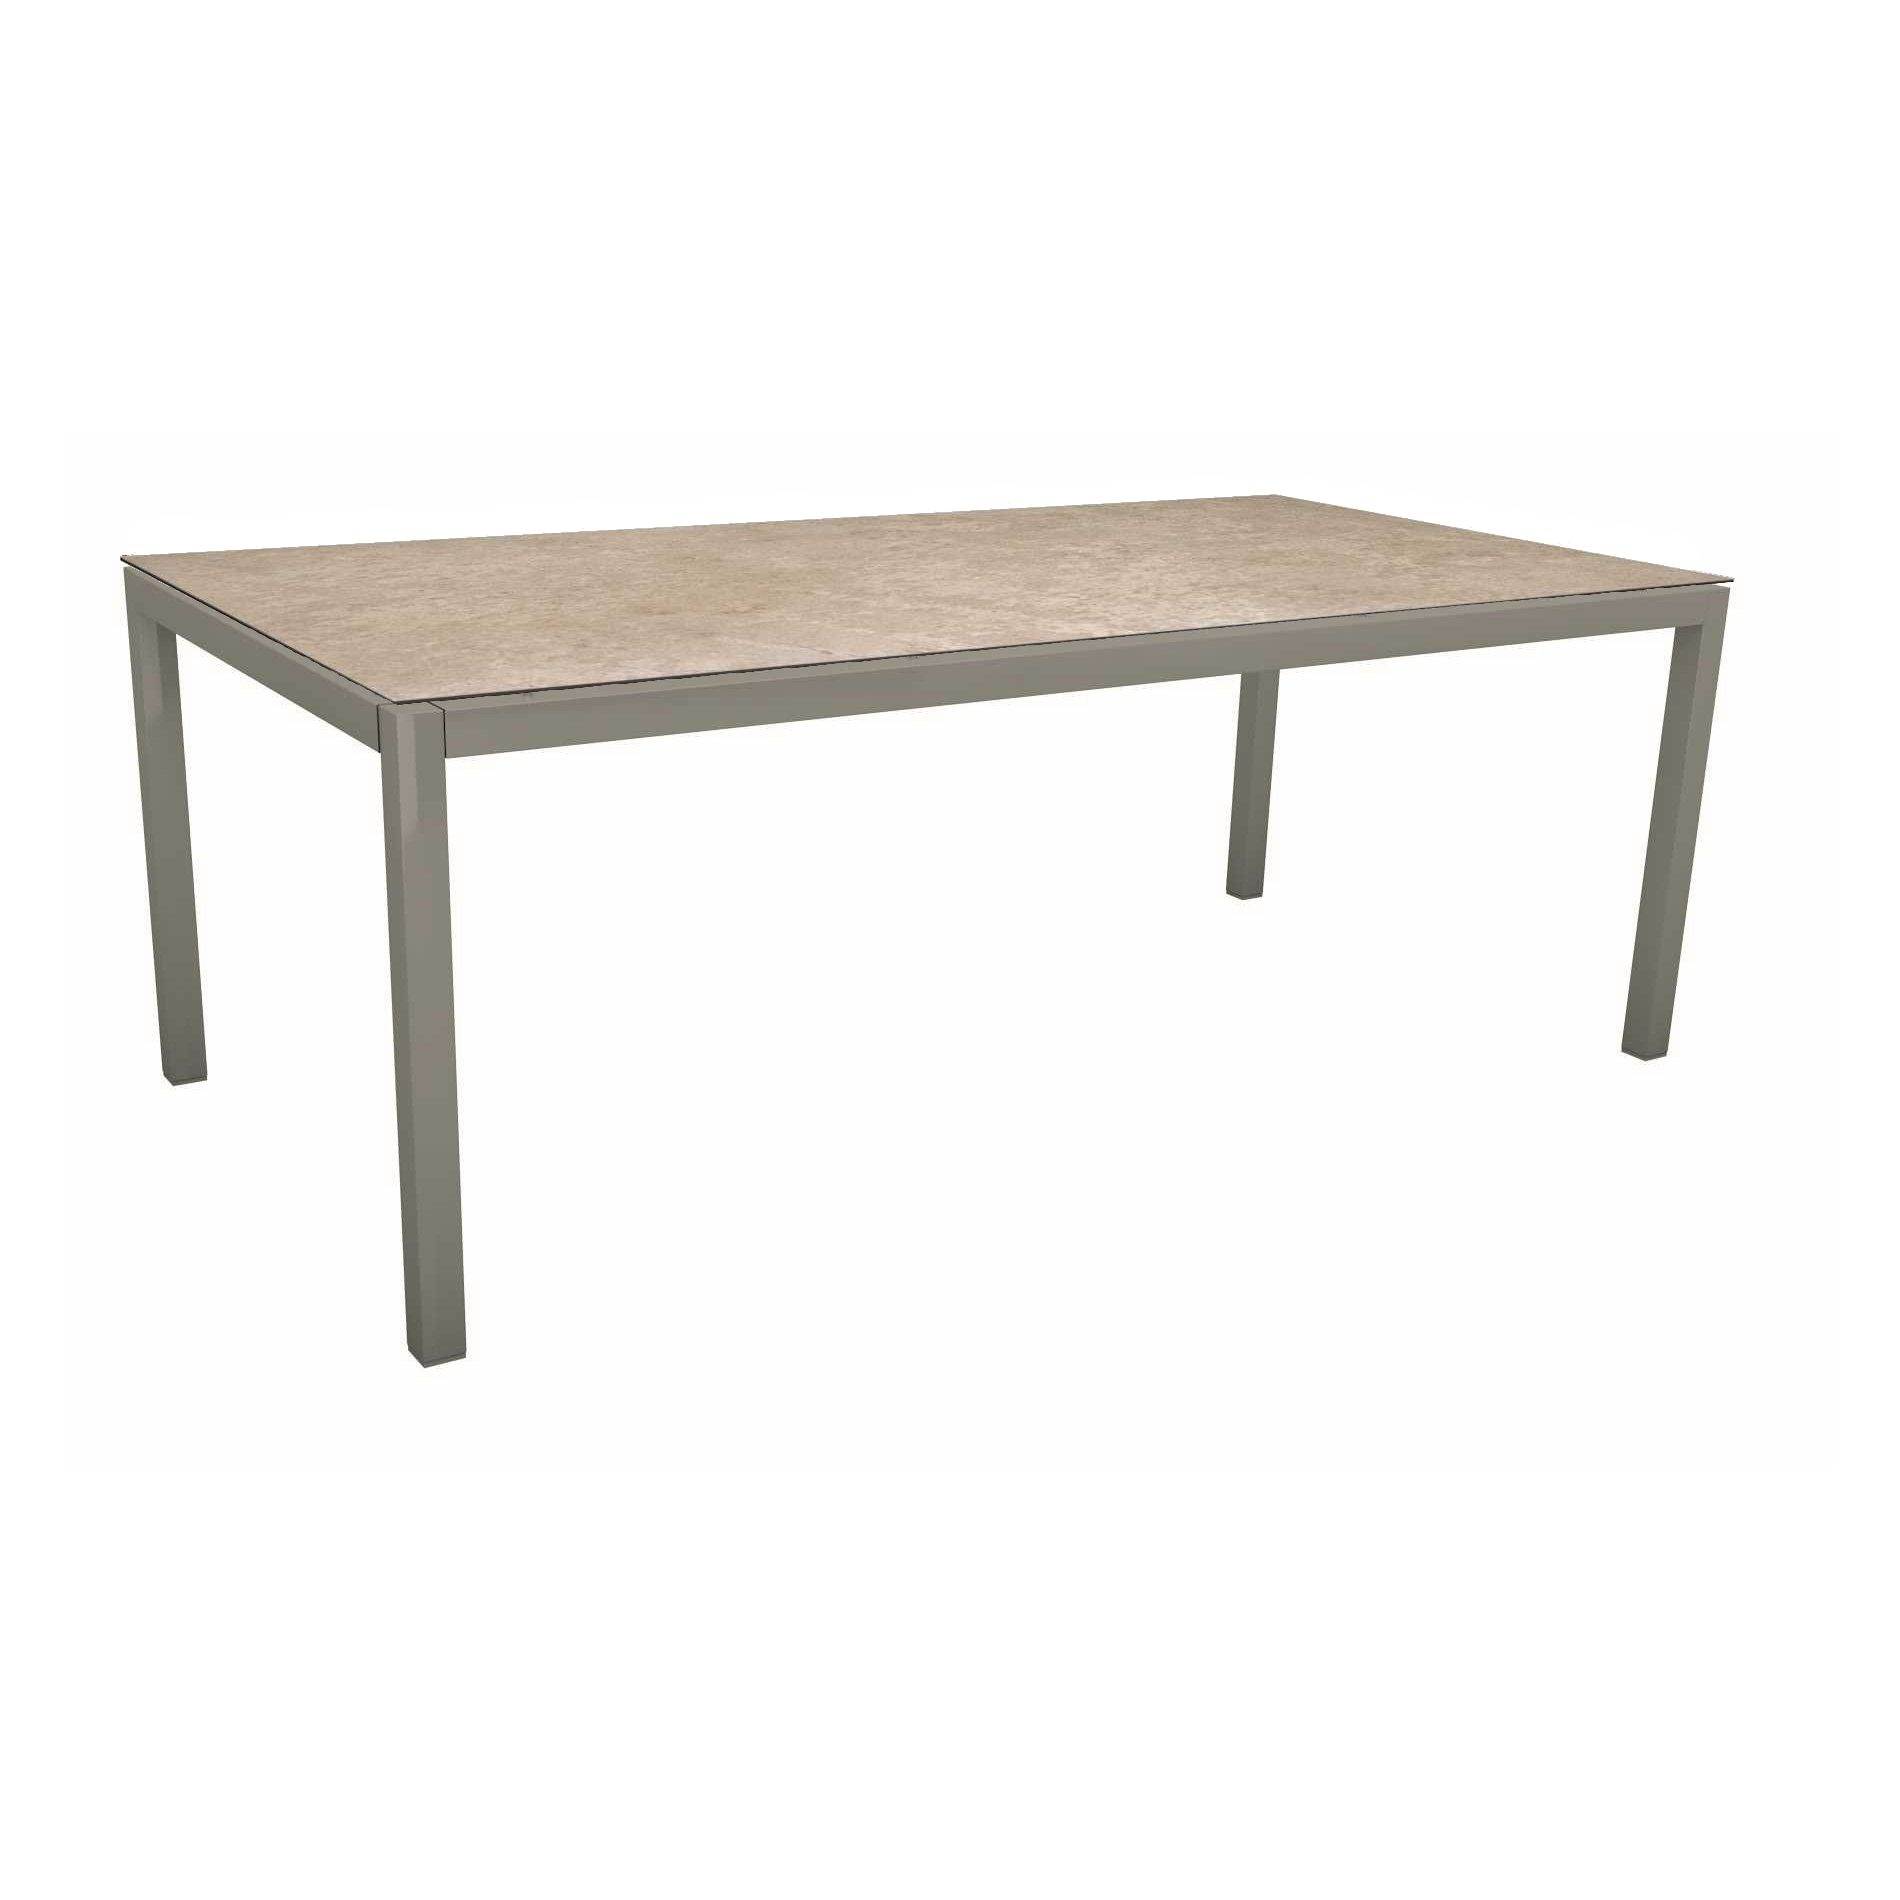 Stern Tischsystem, Gestell Aluminium graphit, Tischplatte HPL Vintage Shell, Größe: 200x100 cm